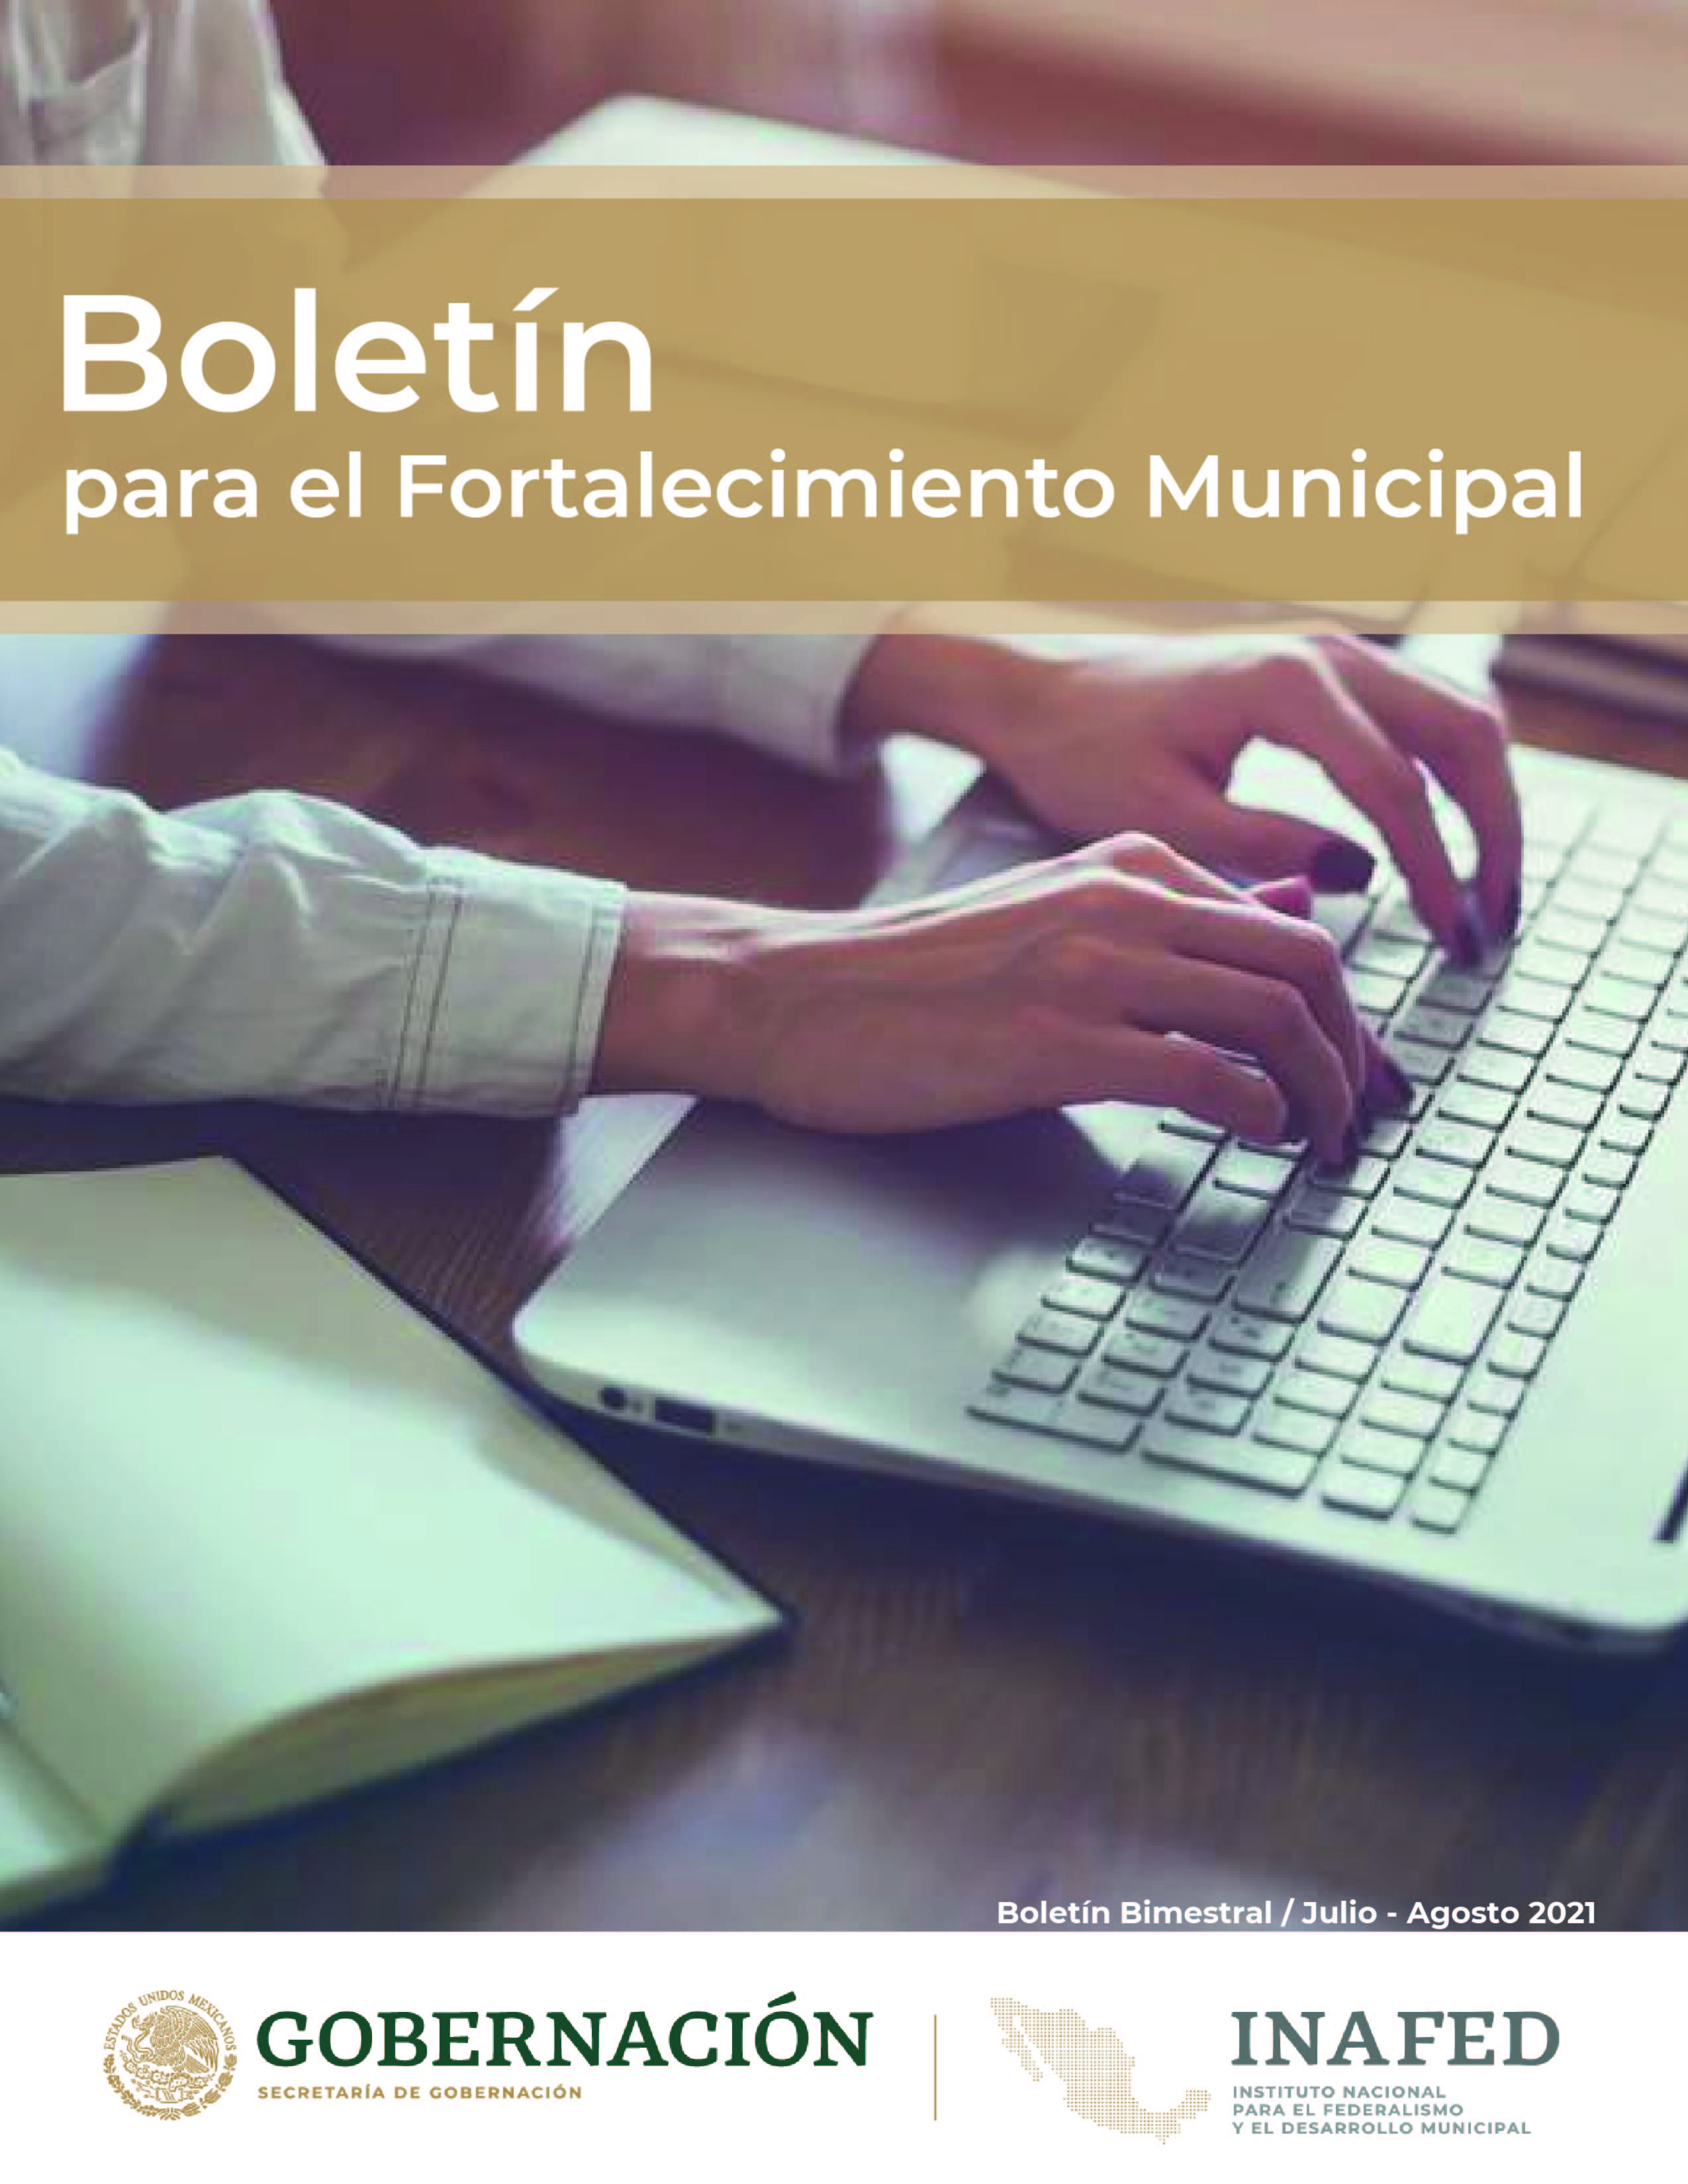 Boletín para el Fortalecimiento Municipal.